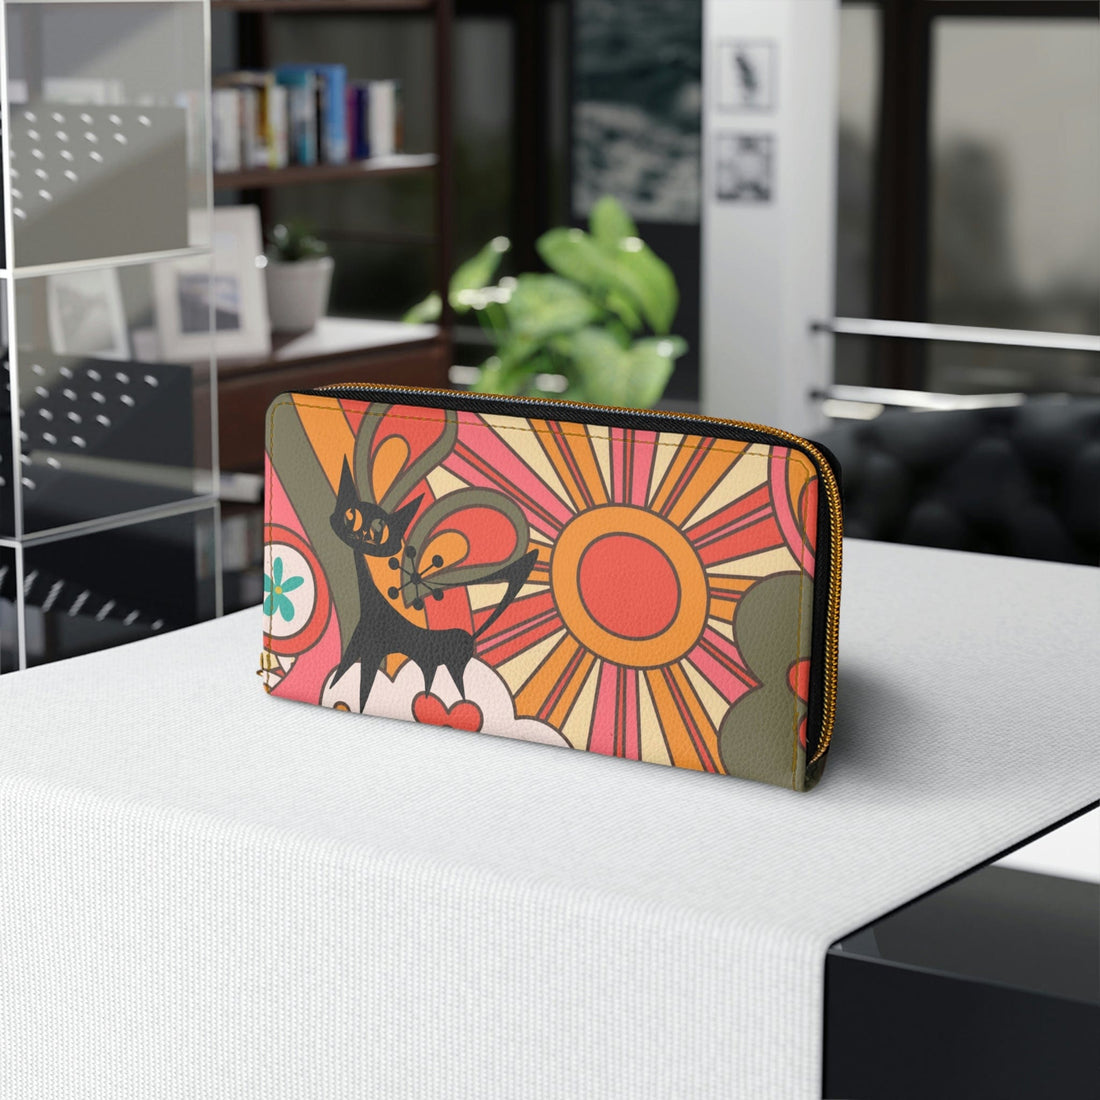 Retro Flower Power Groovy Sunburst, Atomic Kitschy Cat Mod Zipper Wallet Accessories One size / White